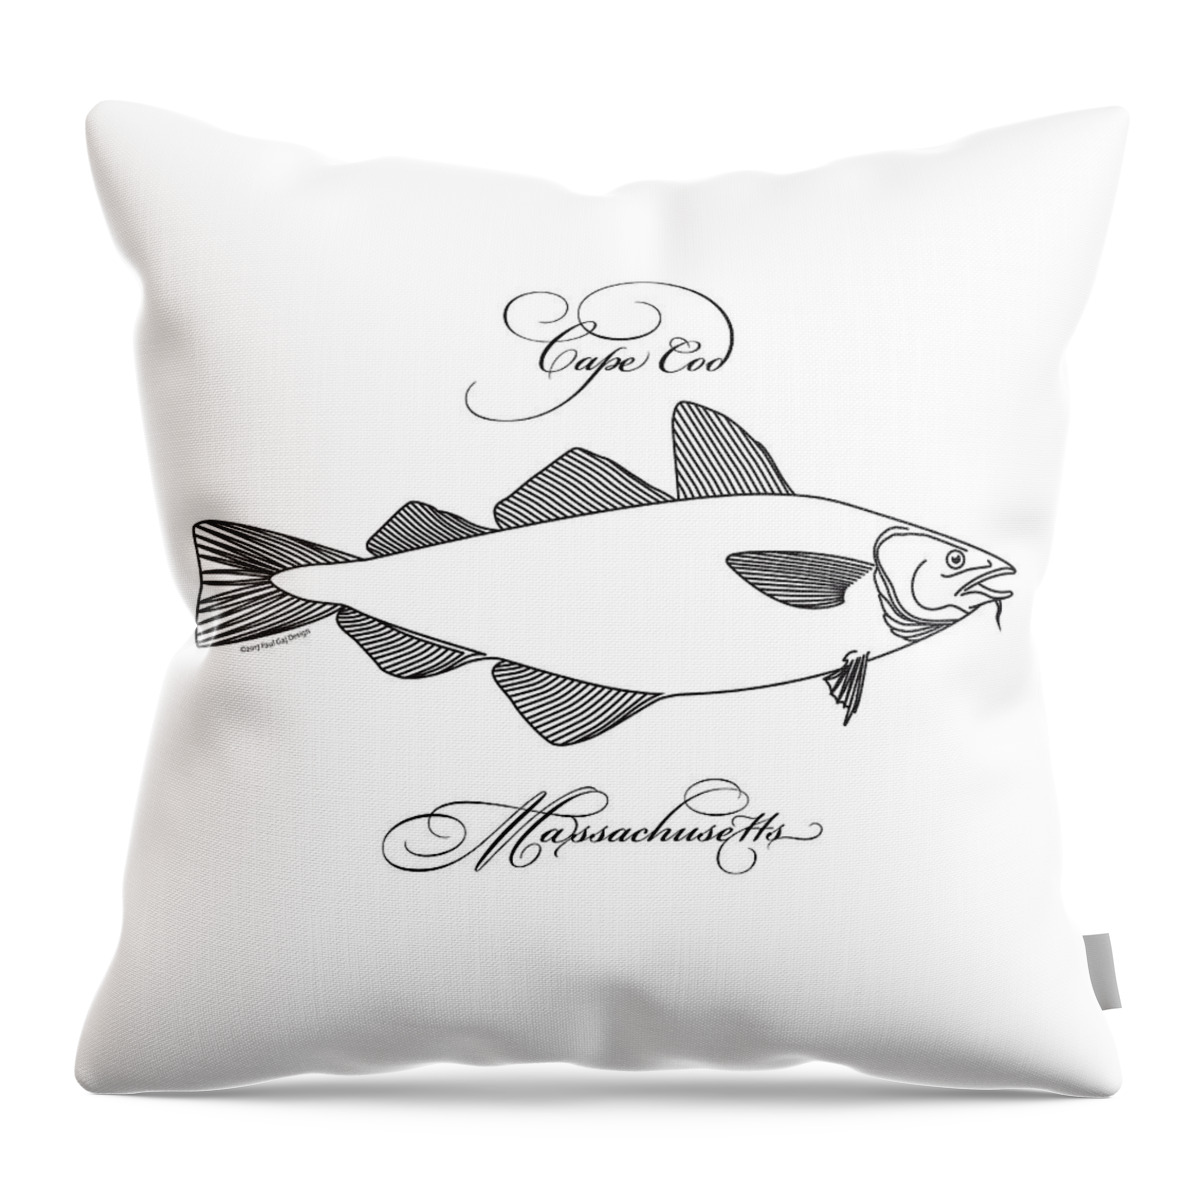 Cape Cod Throw Pillow featuring the digital art Cape Cod by Paul Gaj